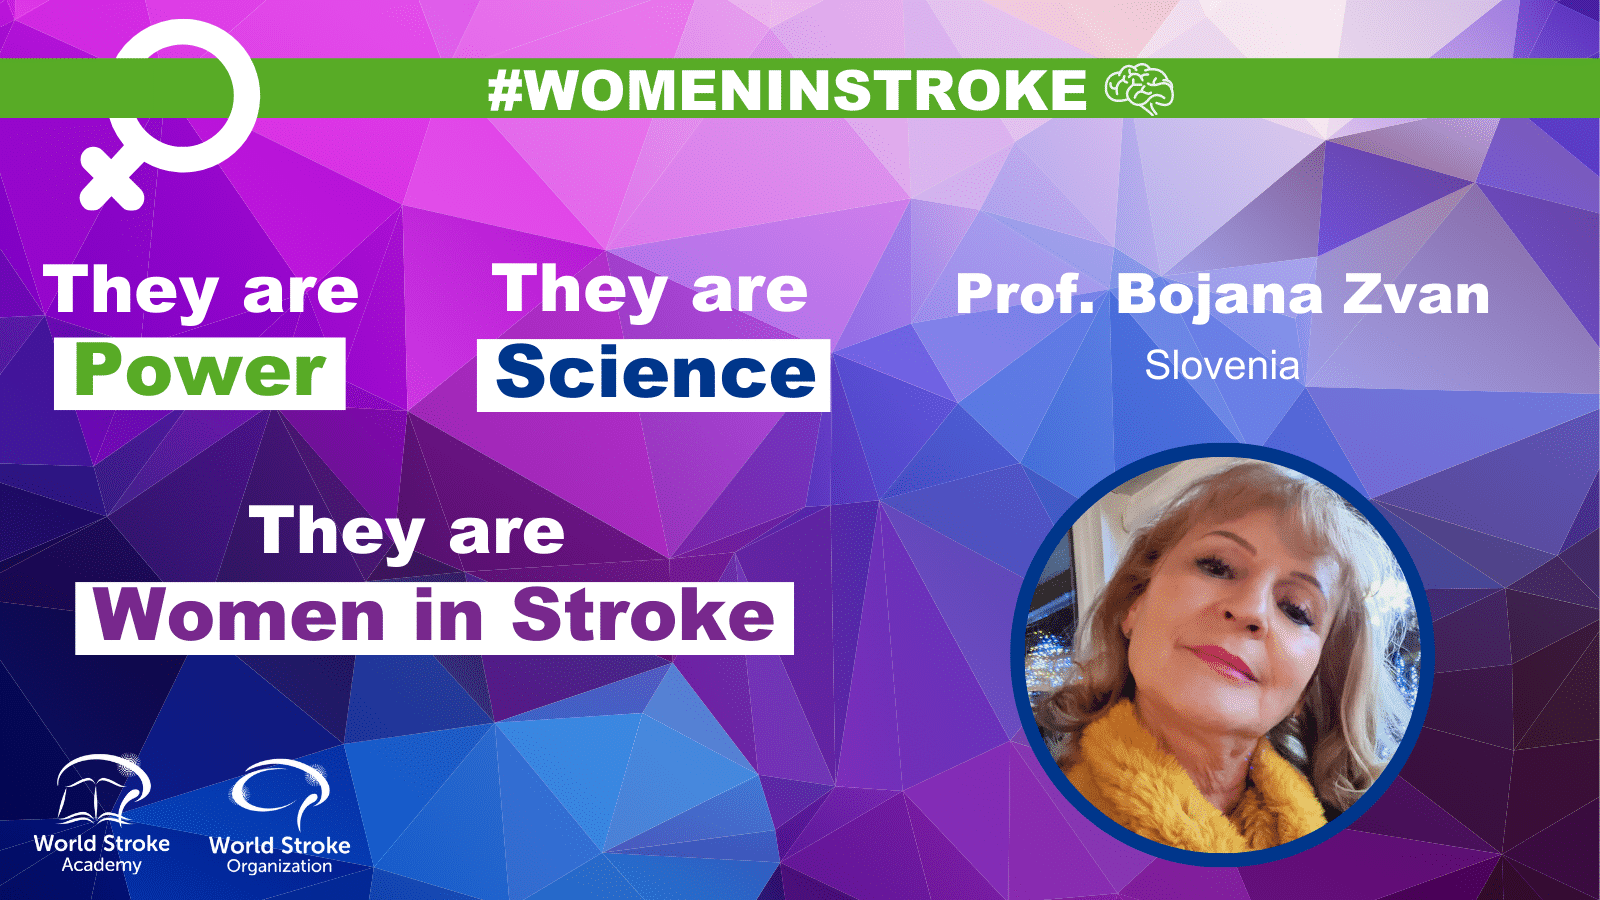 Women in Stroke – Bojana Zvan